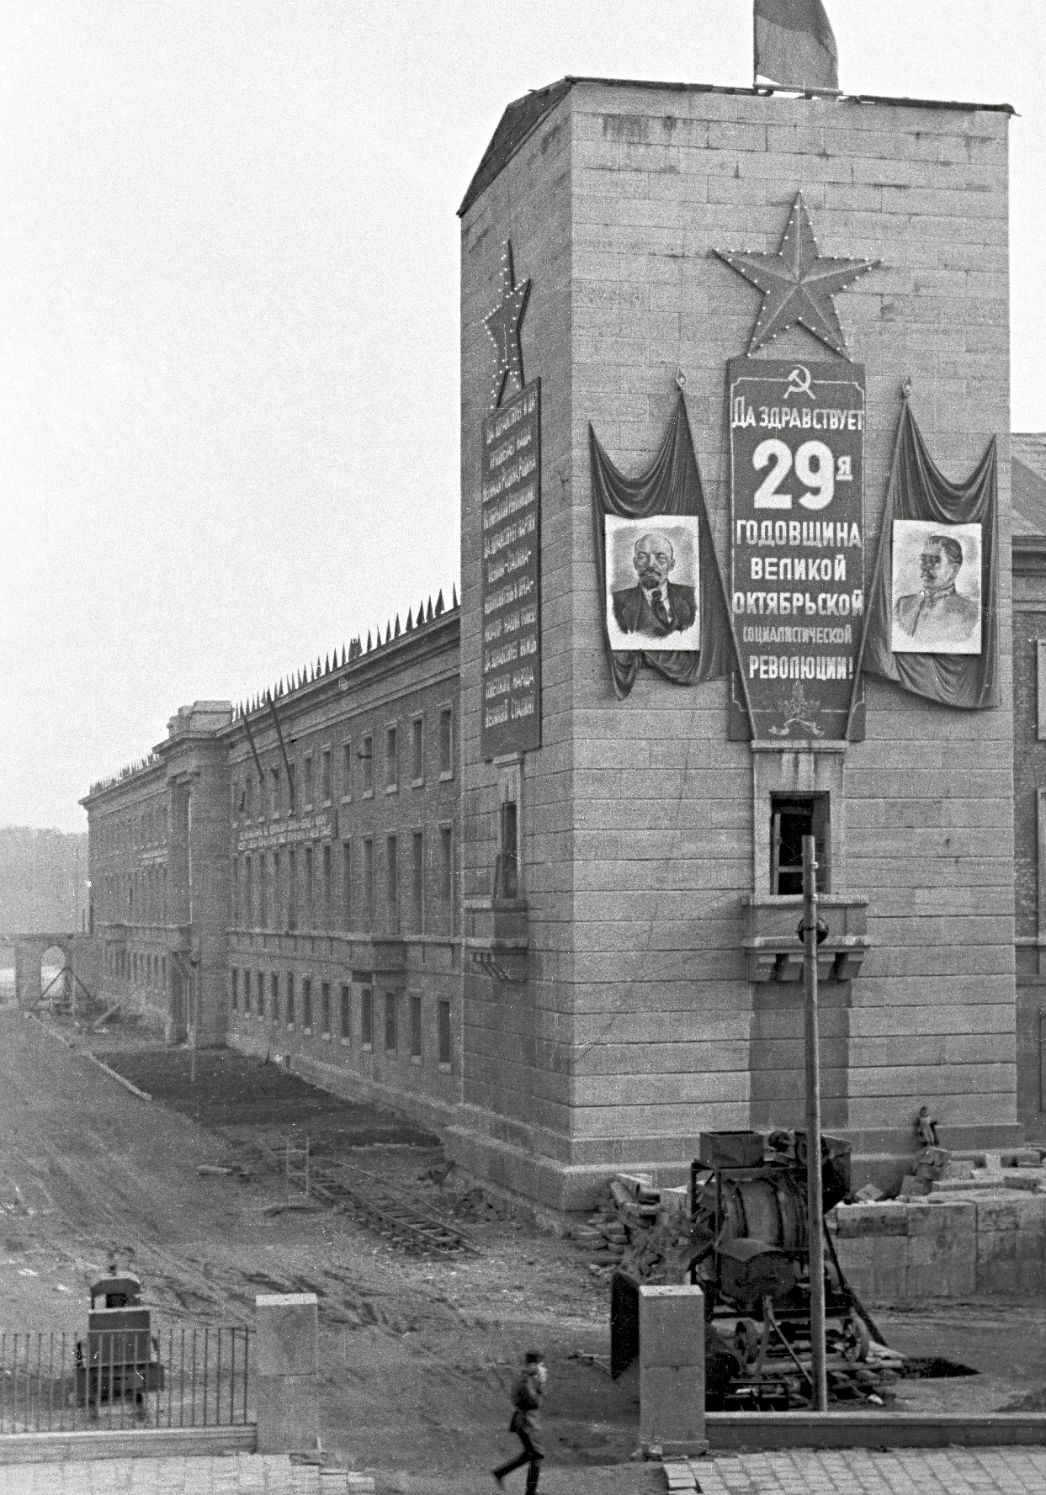 Schwarz-Weiß-Foto des Turms des ehemaligen Gauforums, festlich geschmückt mit Bildern von Stalin und Lenin